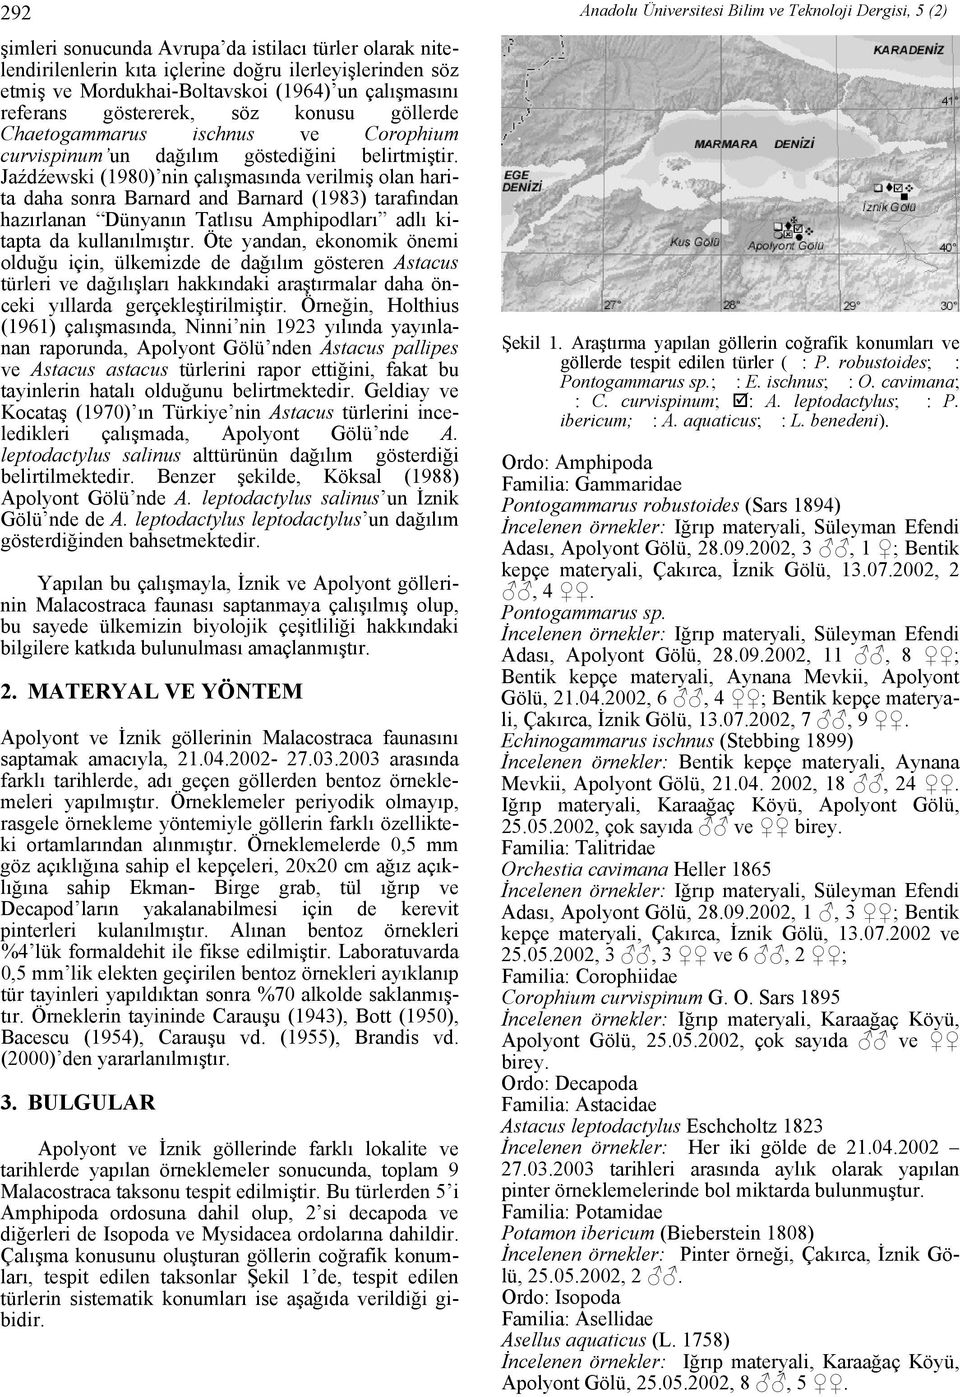 Jaźdźewski (1980) nin çalışmasında verilmiş olan harita daha sonra Barnard and Barnard (1983) tarafından hazırlanan Dünyanın Tatlısu Amphipodları adlı kitapta da kullanılmıştır.